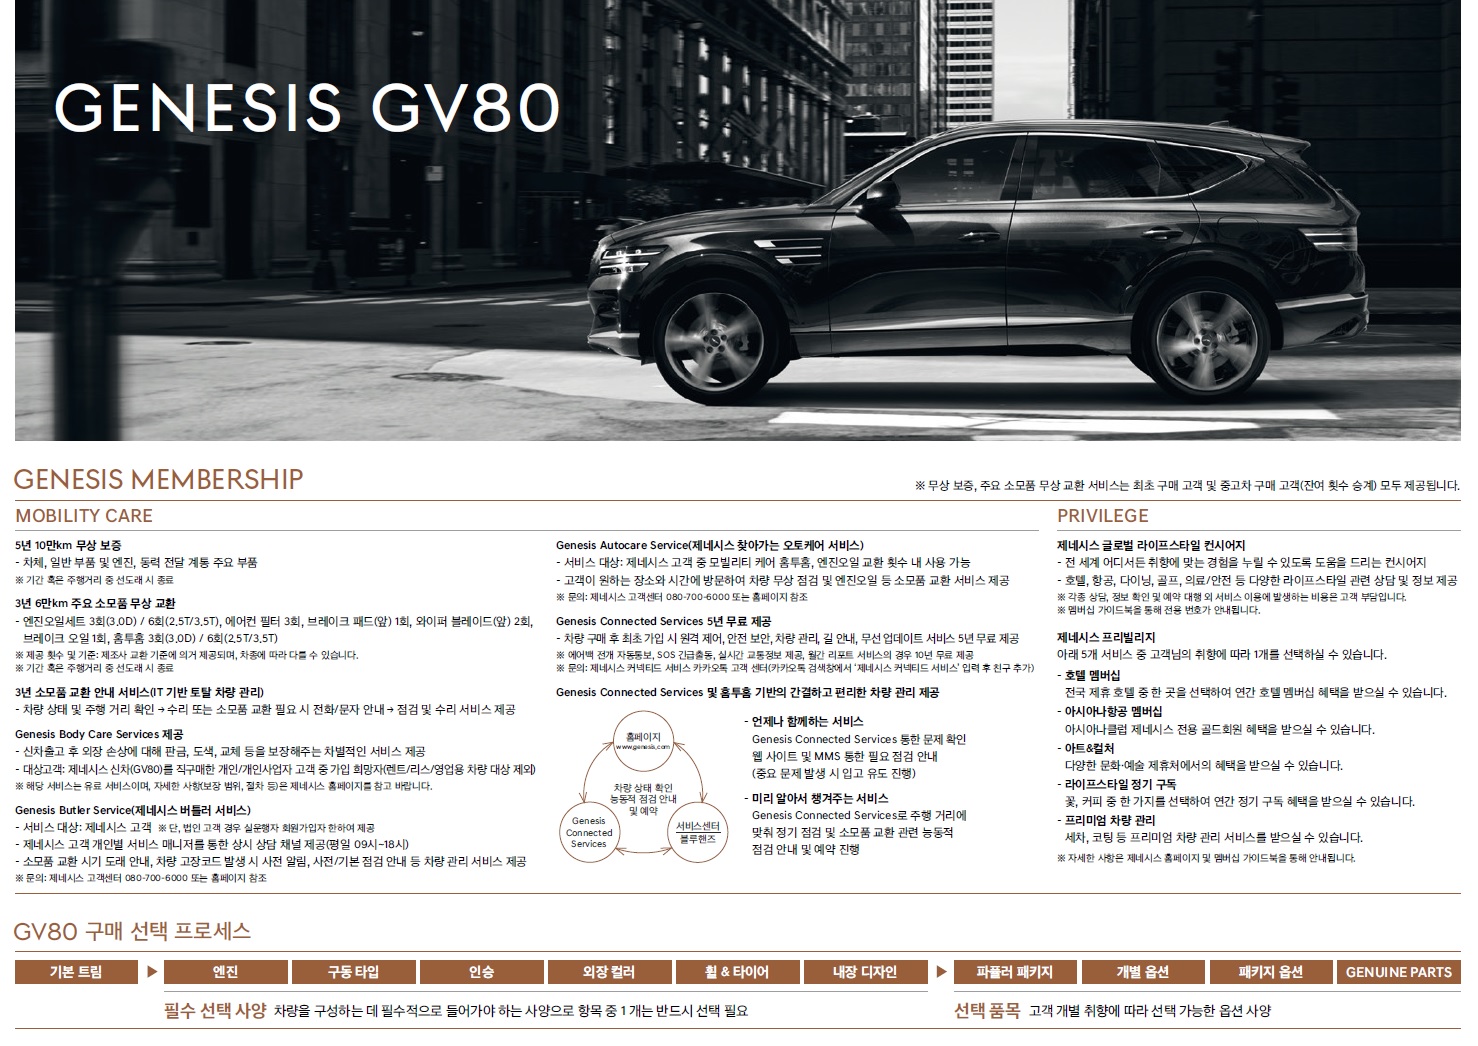 제네시스 GV80 가격표 - 2021년 08월 -1.jpg